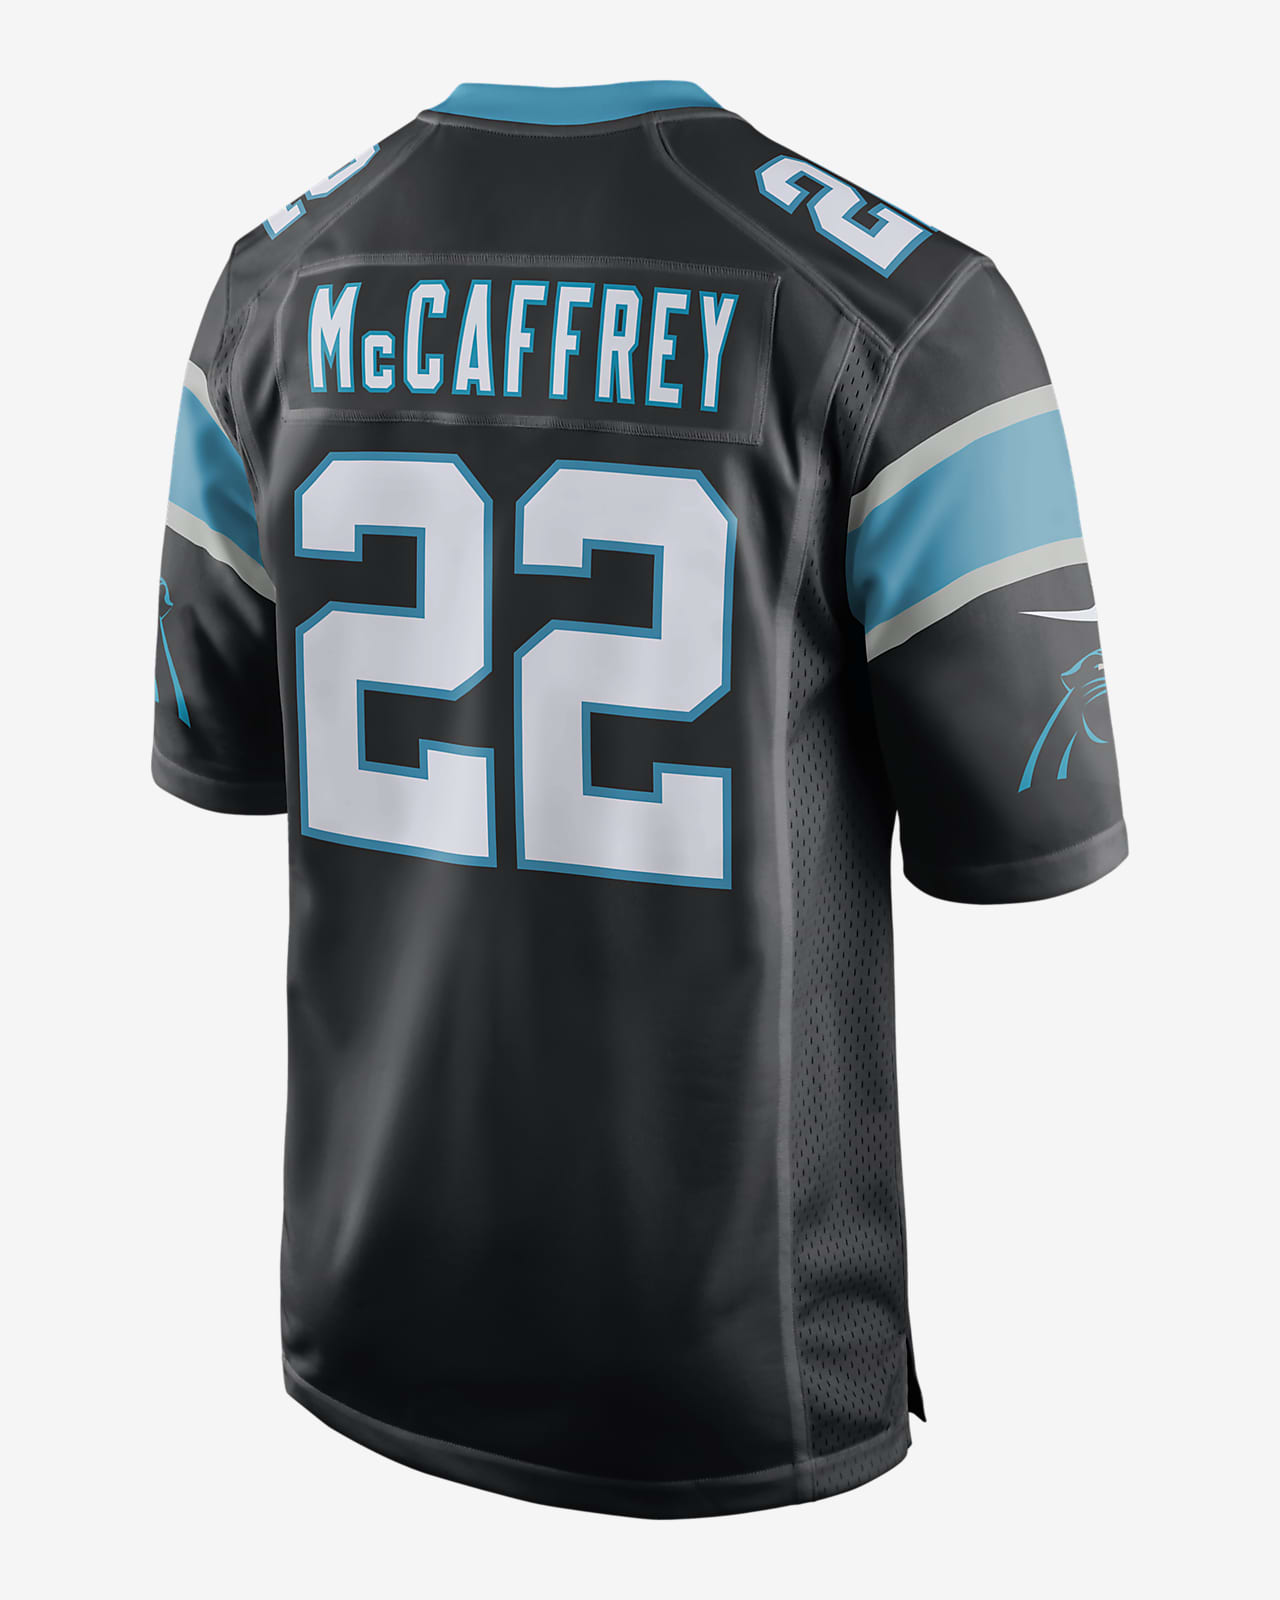 NFL Carolina Panthers (Christian Mccafrey) Men's Game Football Jersey